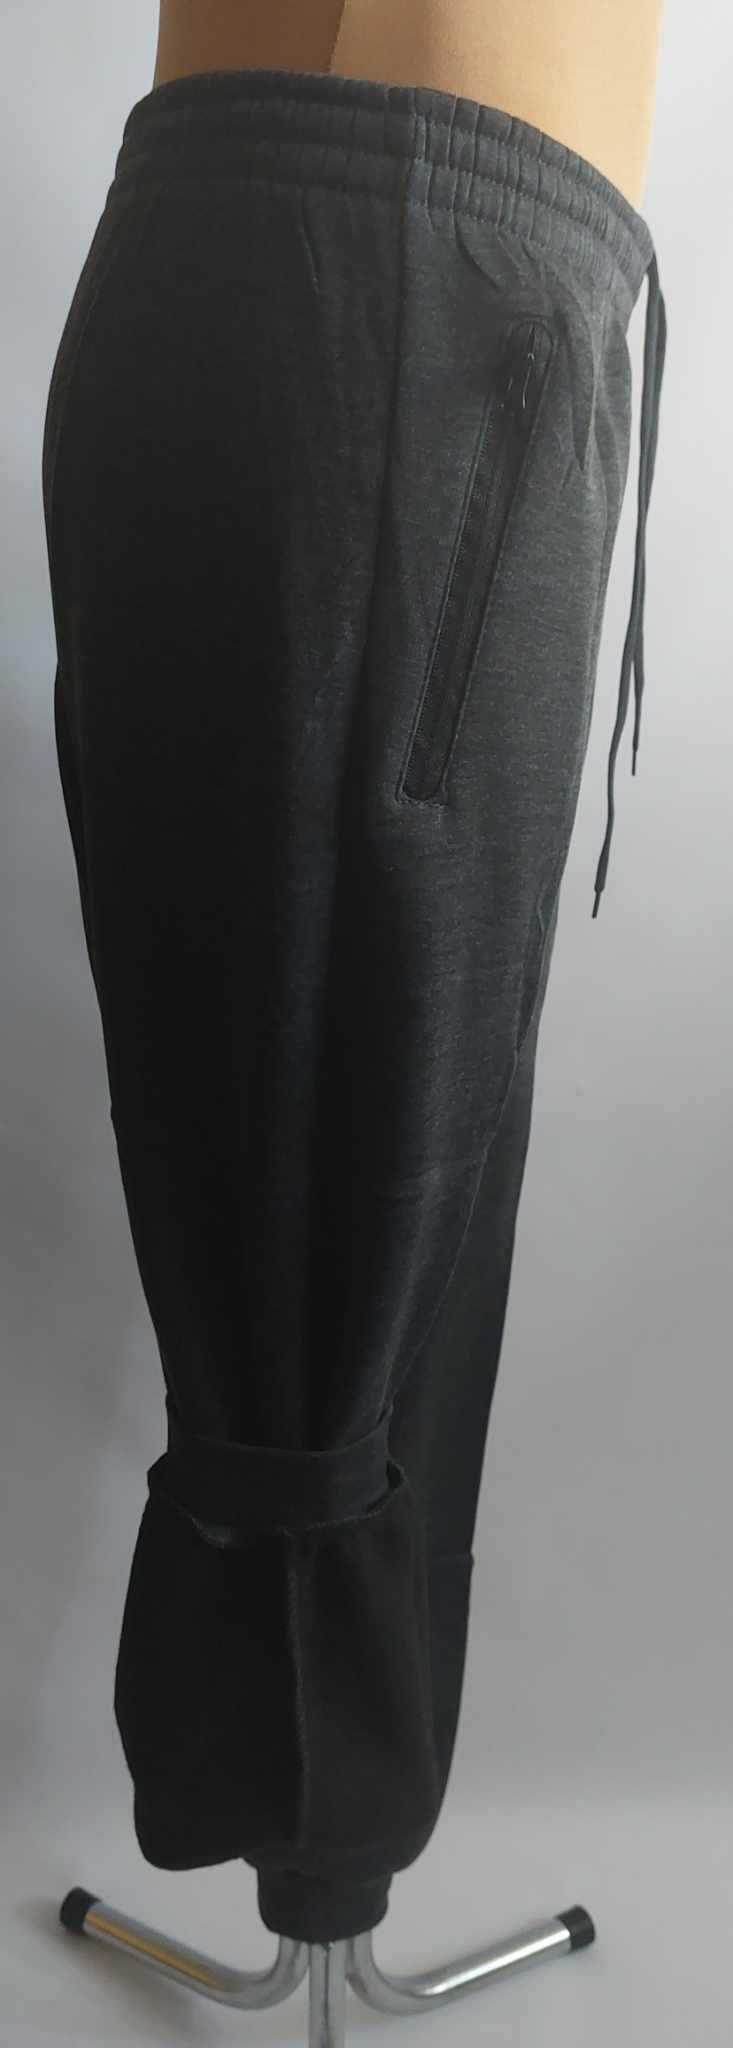 Spodnie męskie dresowe ocieplane meszkiem LINTEBOB g R-41506-K r. L